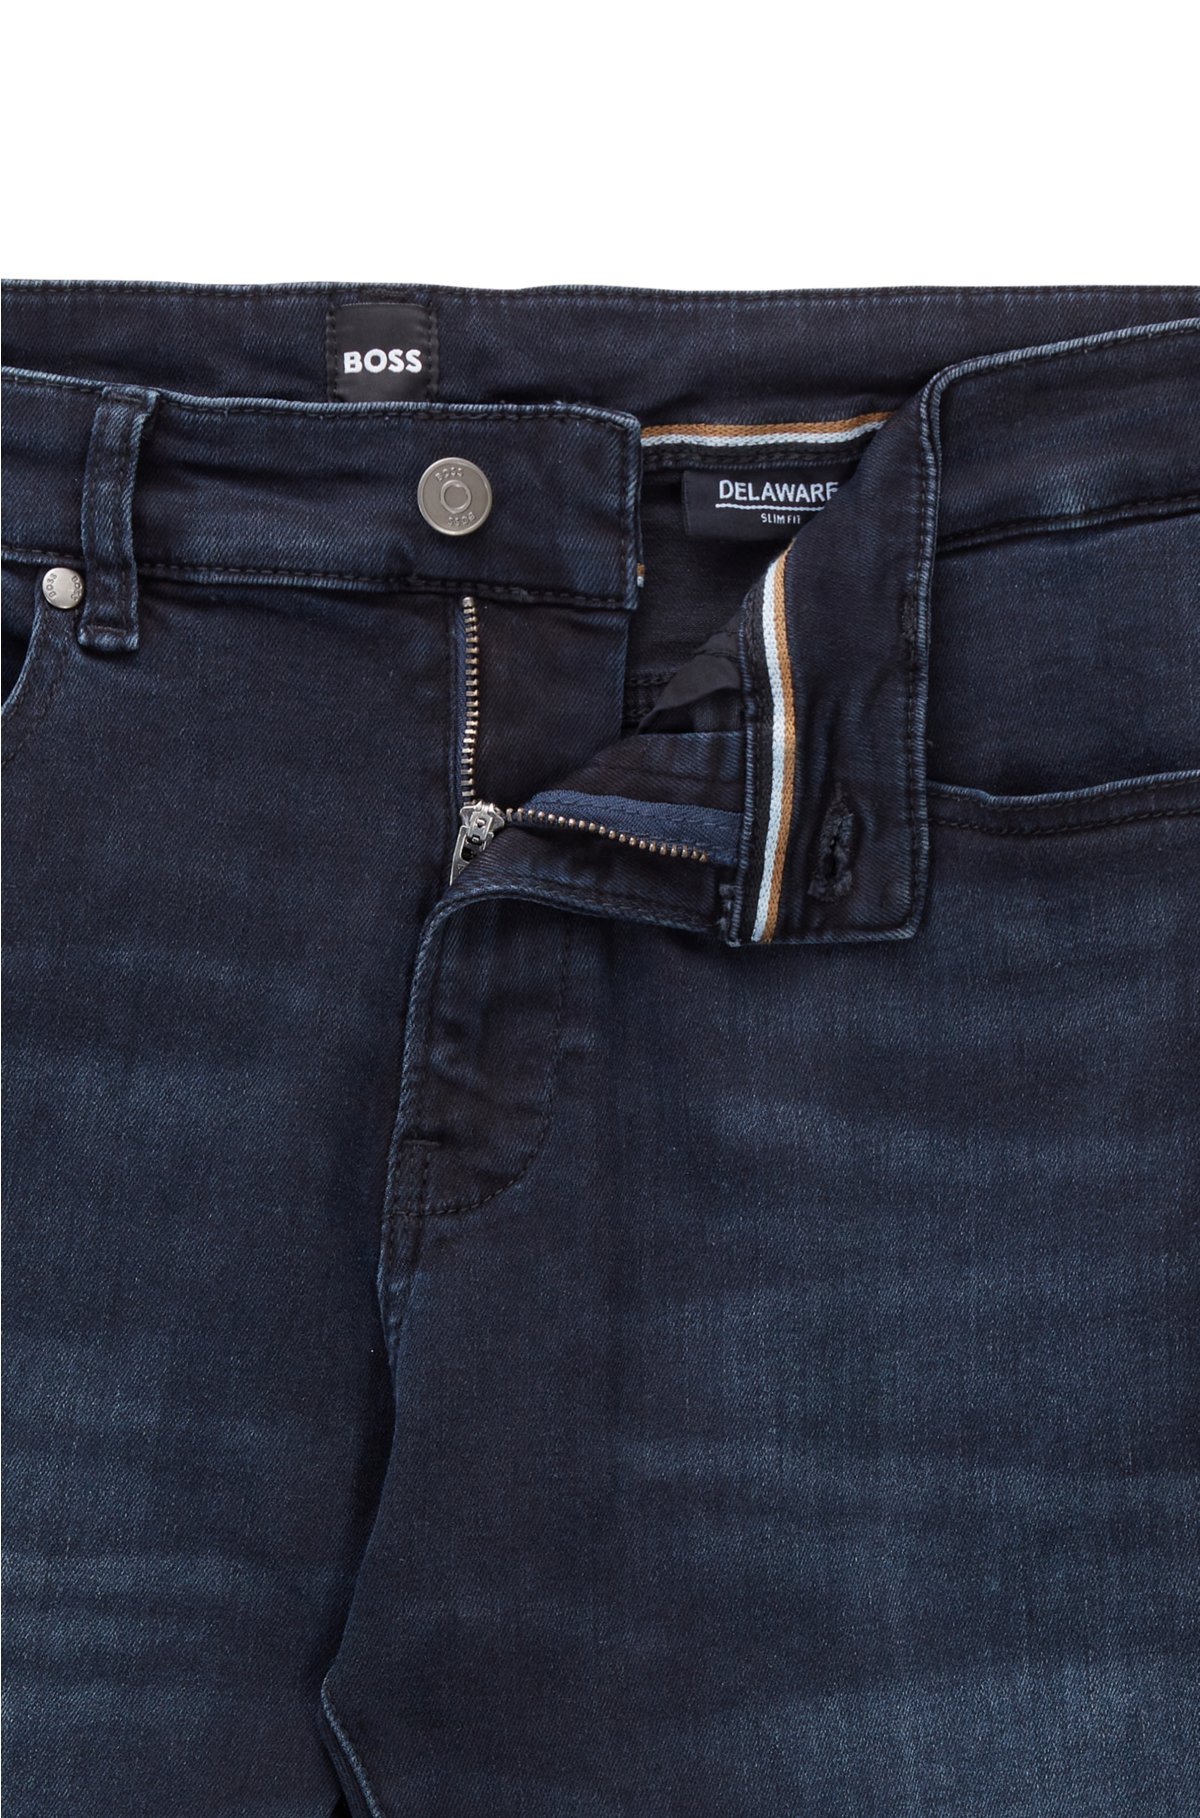 Classificatie Atlantische Oceaan converteerbaar BOSS - Slim-fit jeans in dark-blue super-stretch denim